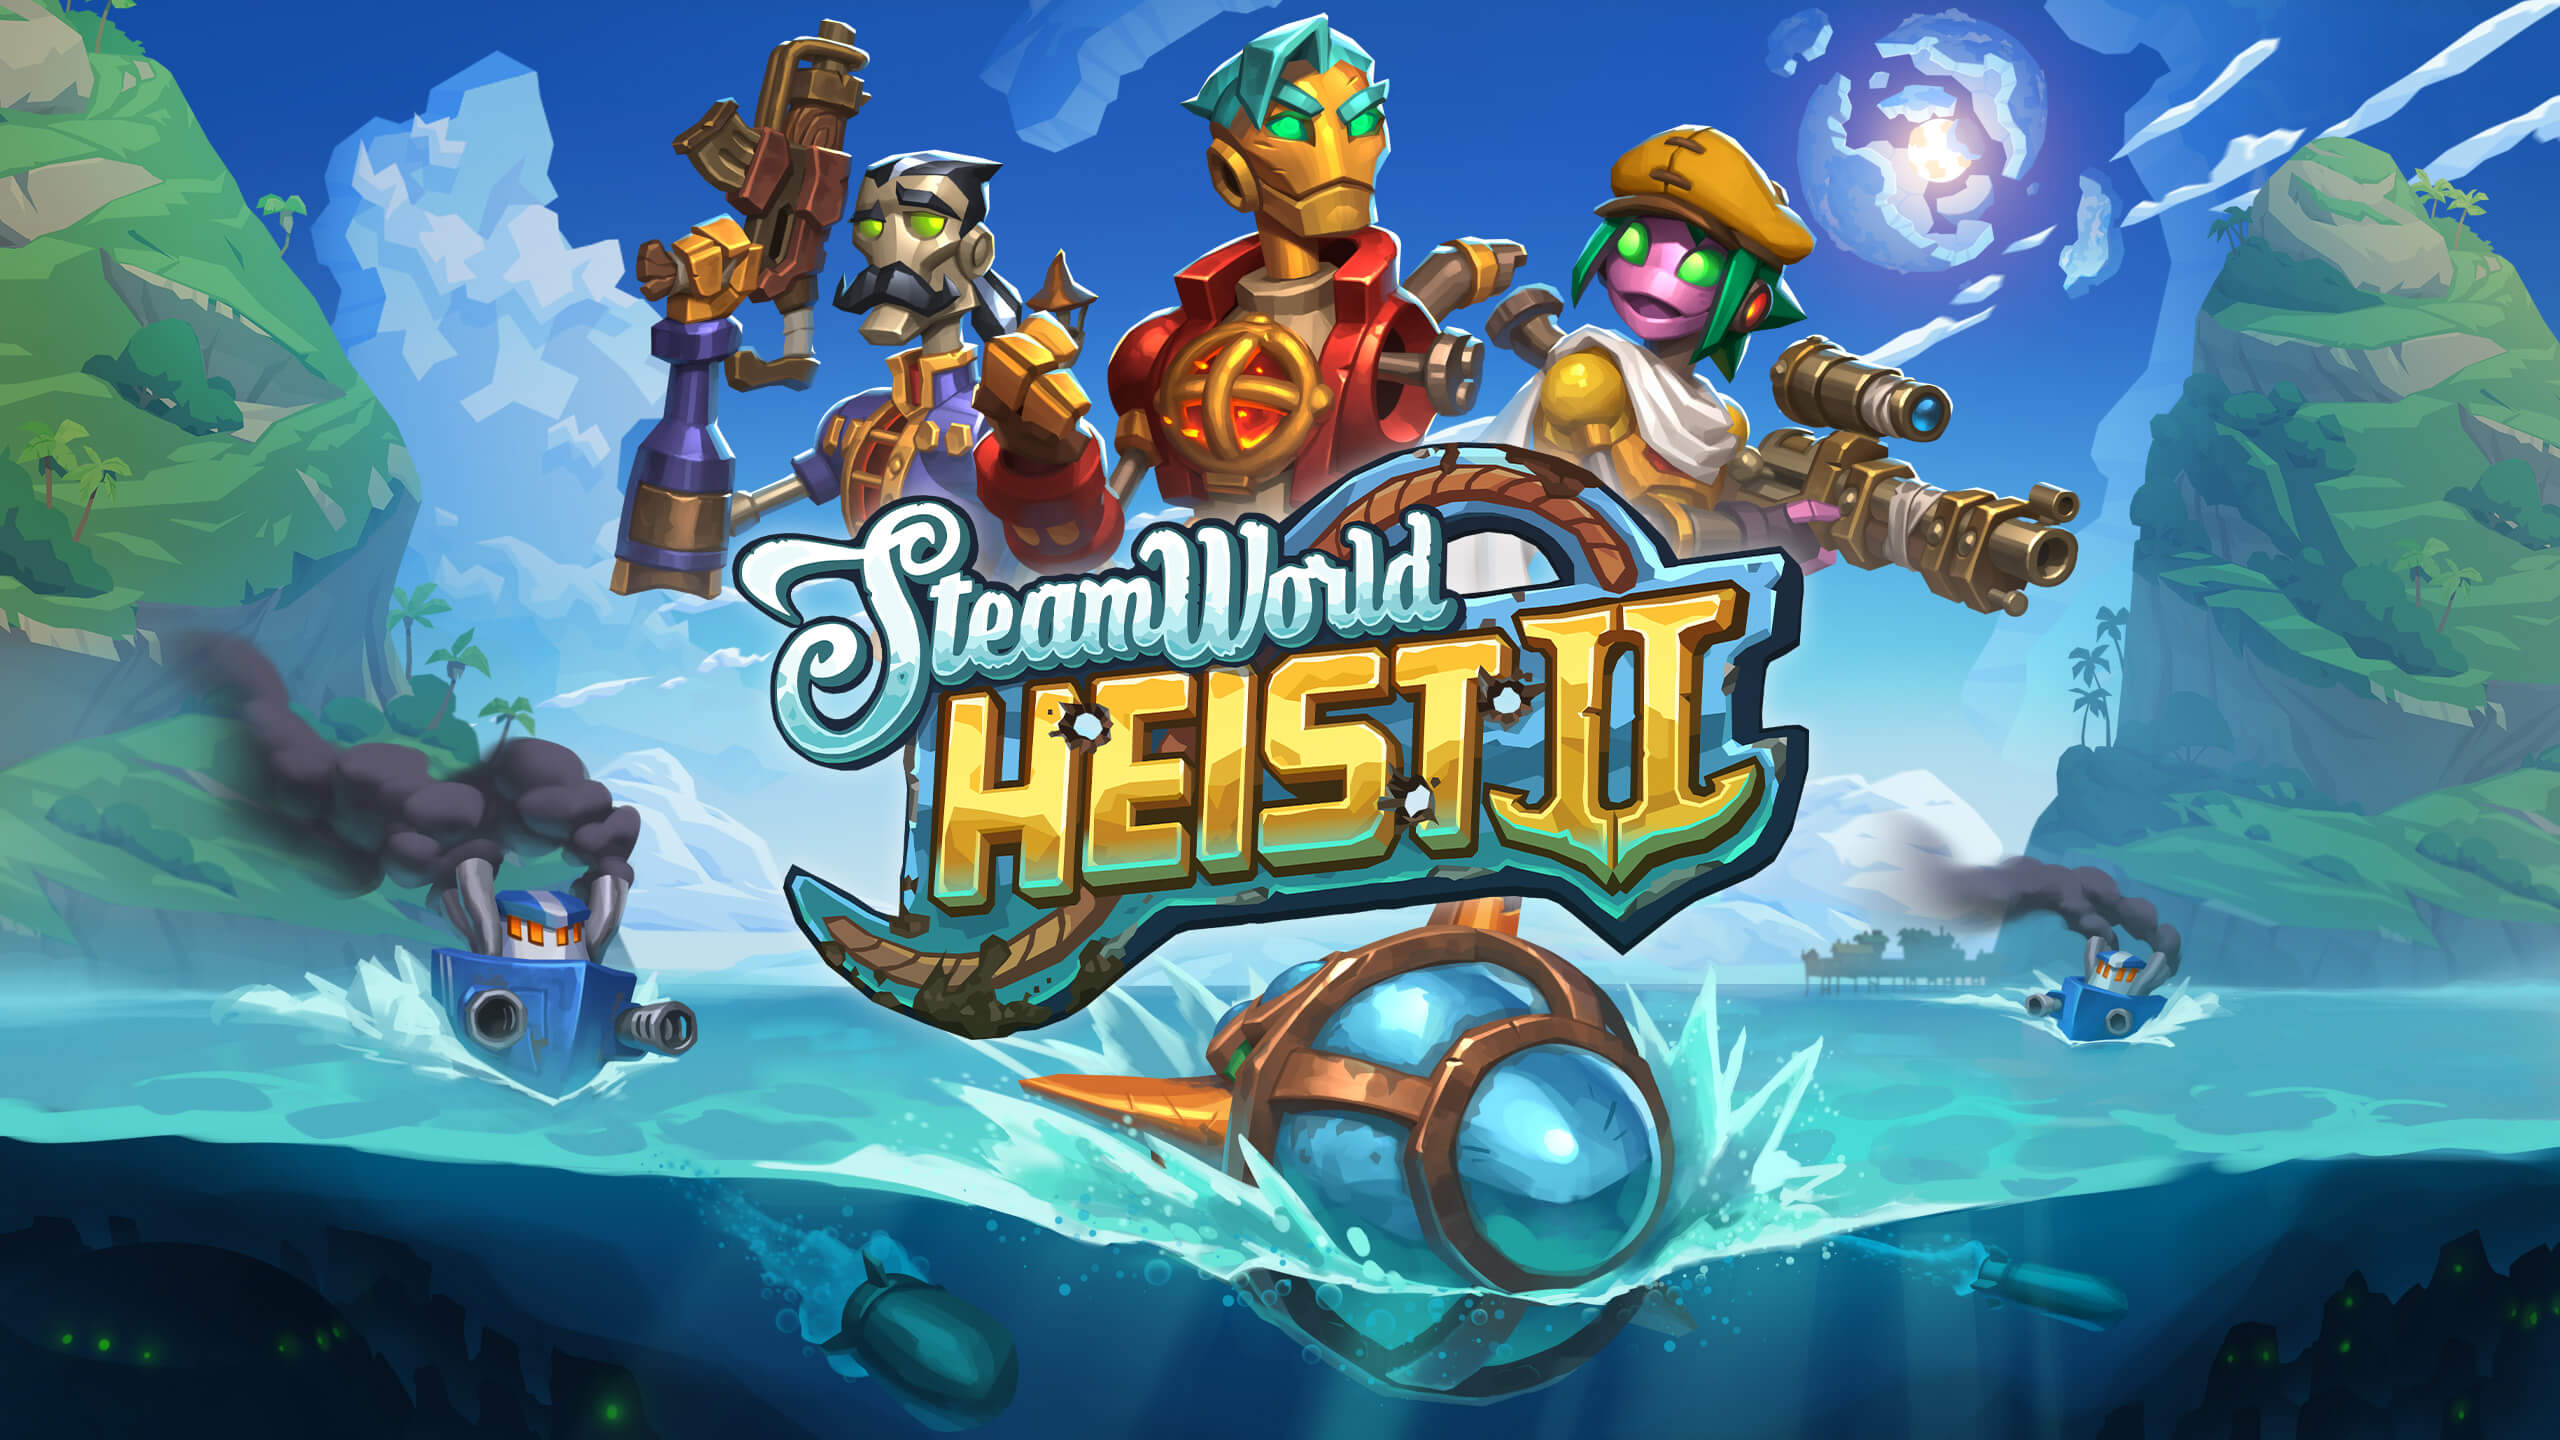 SteamWorld Heist 2 Banner Image